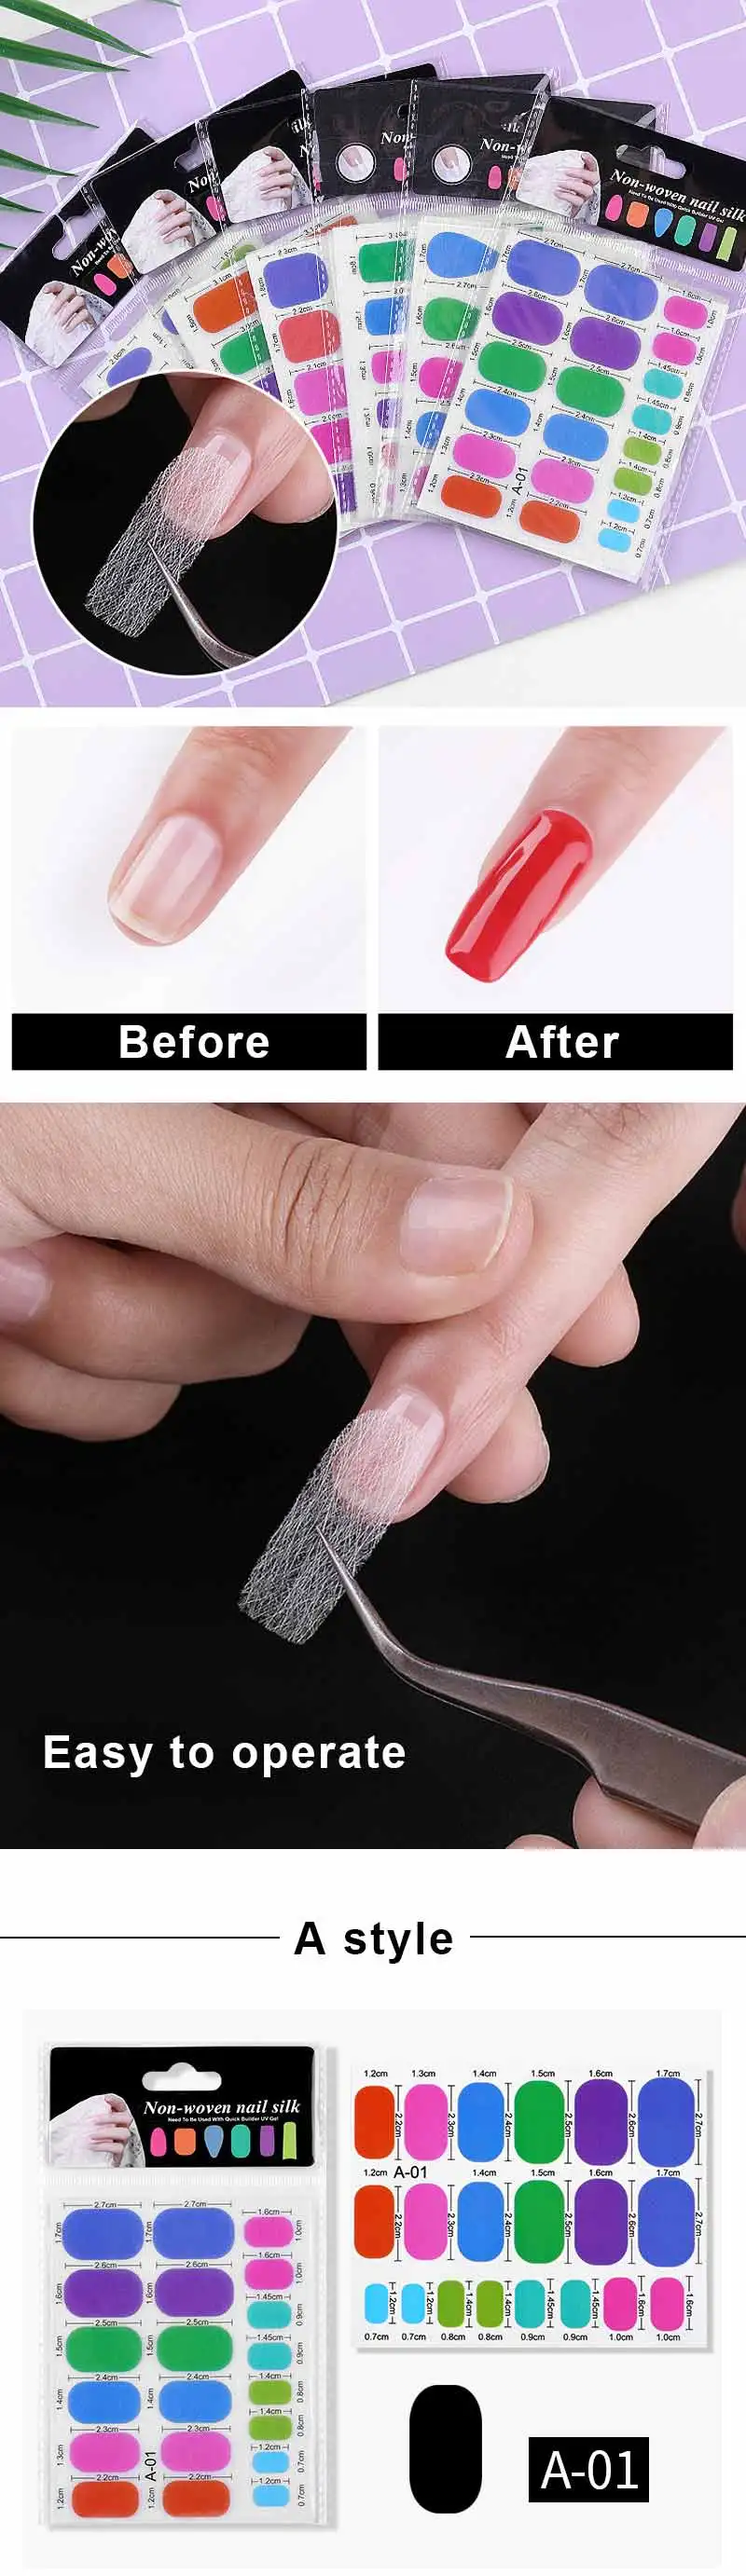 Волокно для наращивания ногтей 1 упаковка белый нетканый шелк для быстрого УФ-геля для строительства ногтей формы Fibernails инструмент для маникюра сделай сам